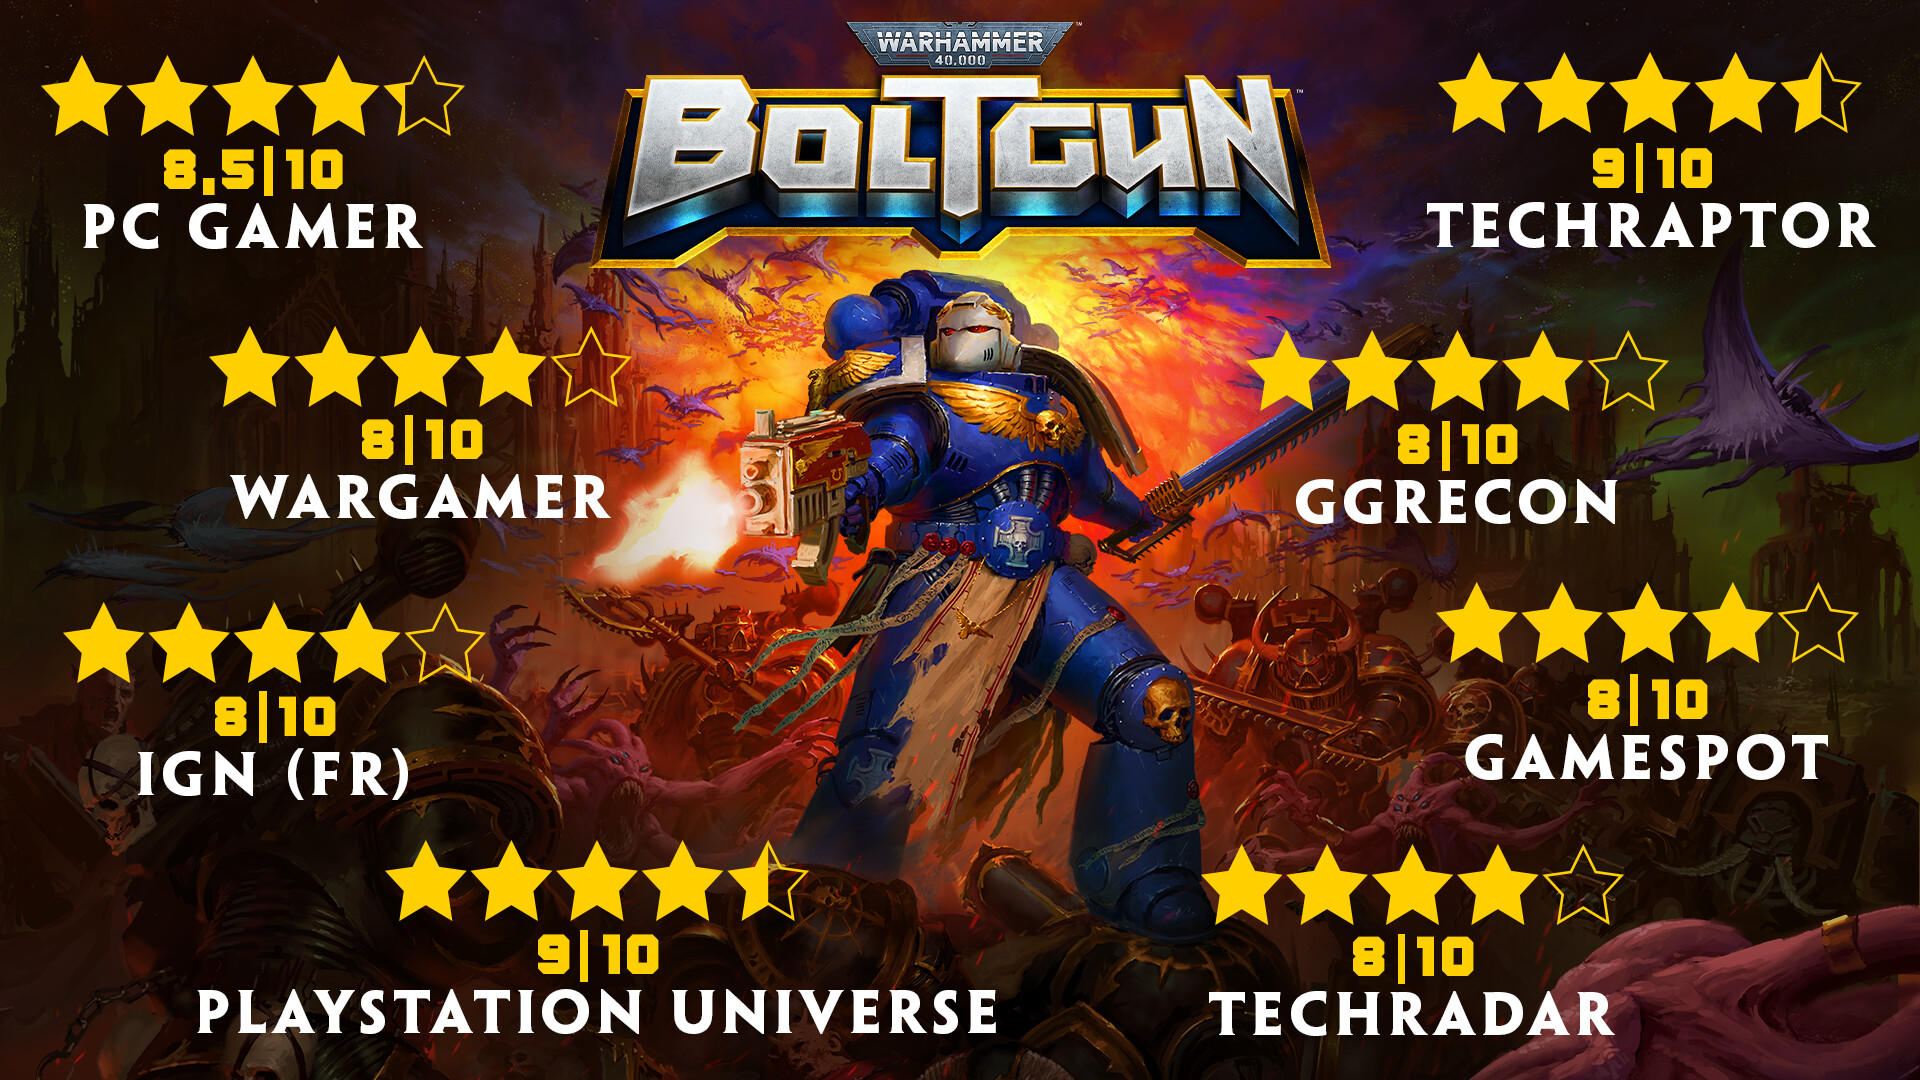 Screenshot 1 of Warhammer 40,000: Boltgun 